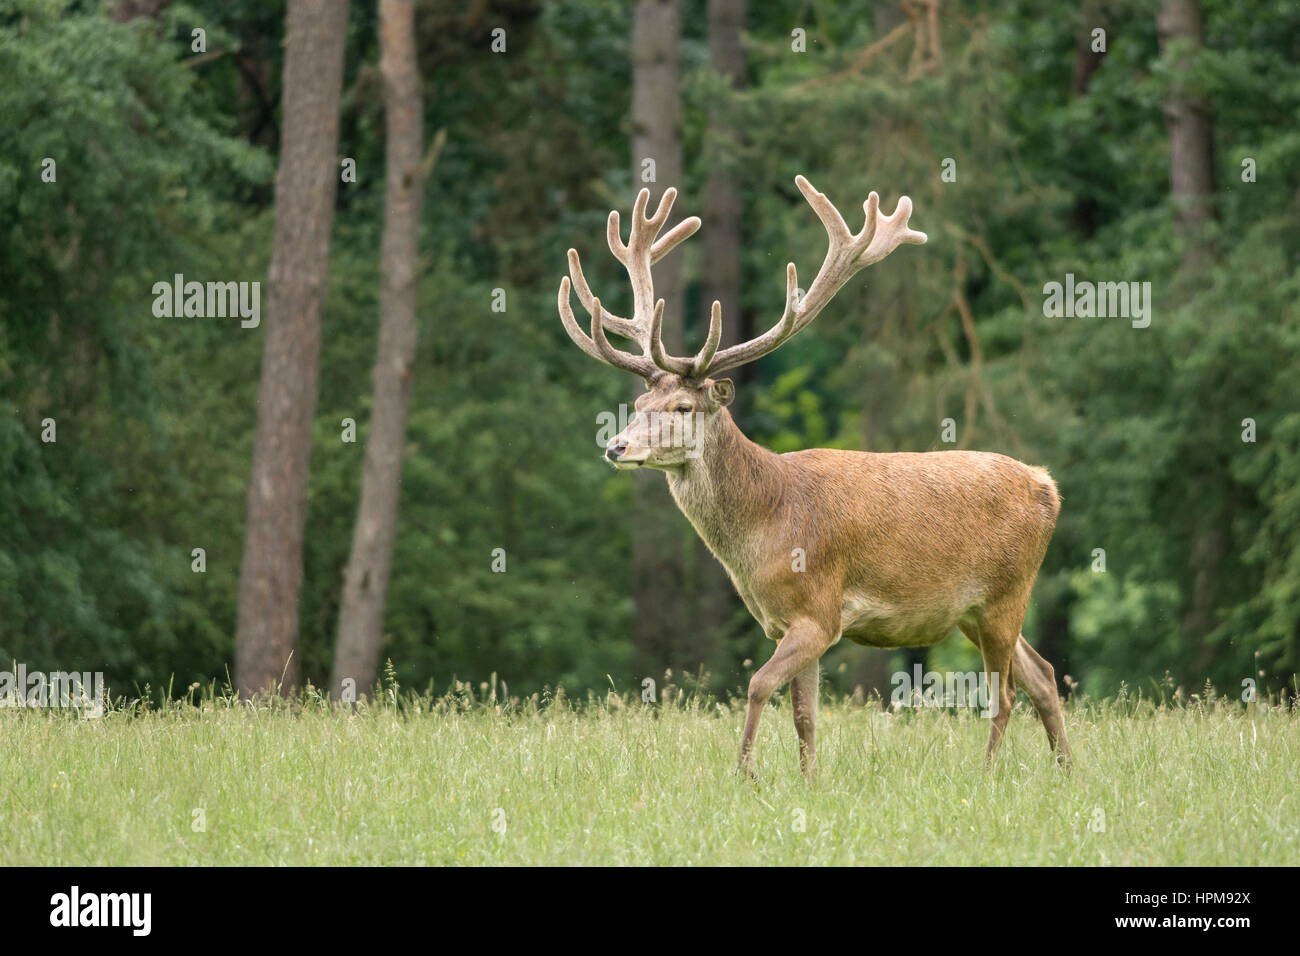 Un cerf en velours de profil marchant dans un pré. Cervus elaphus. A red deer during mating season Stock Photo